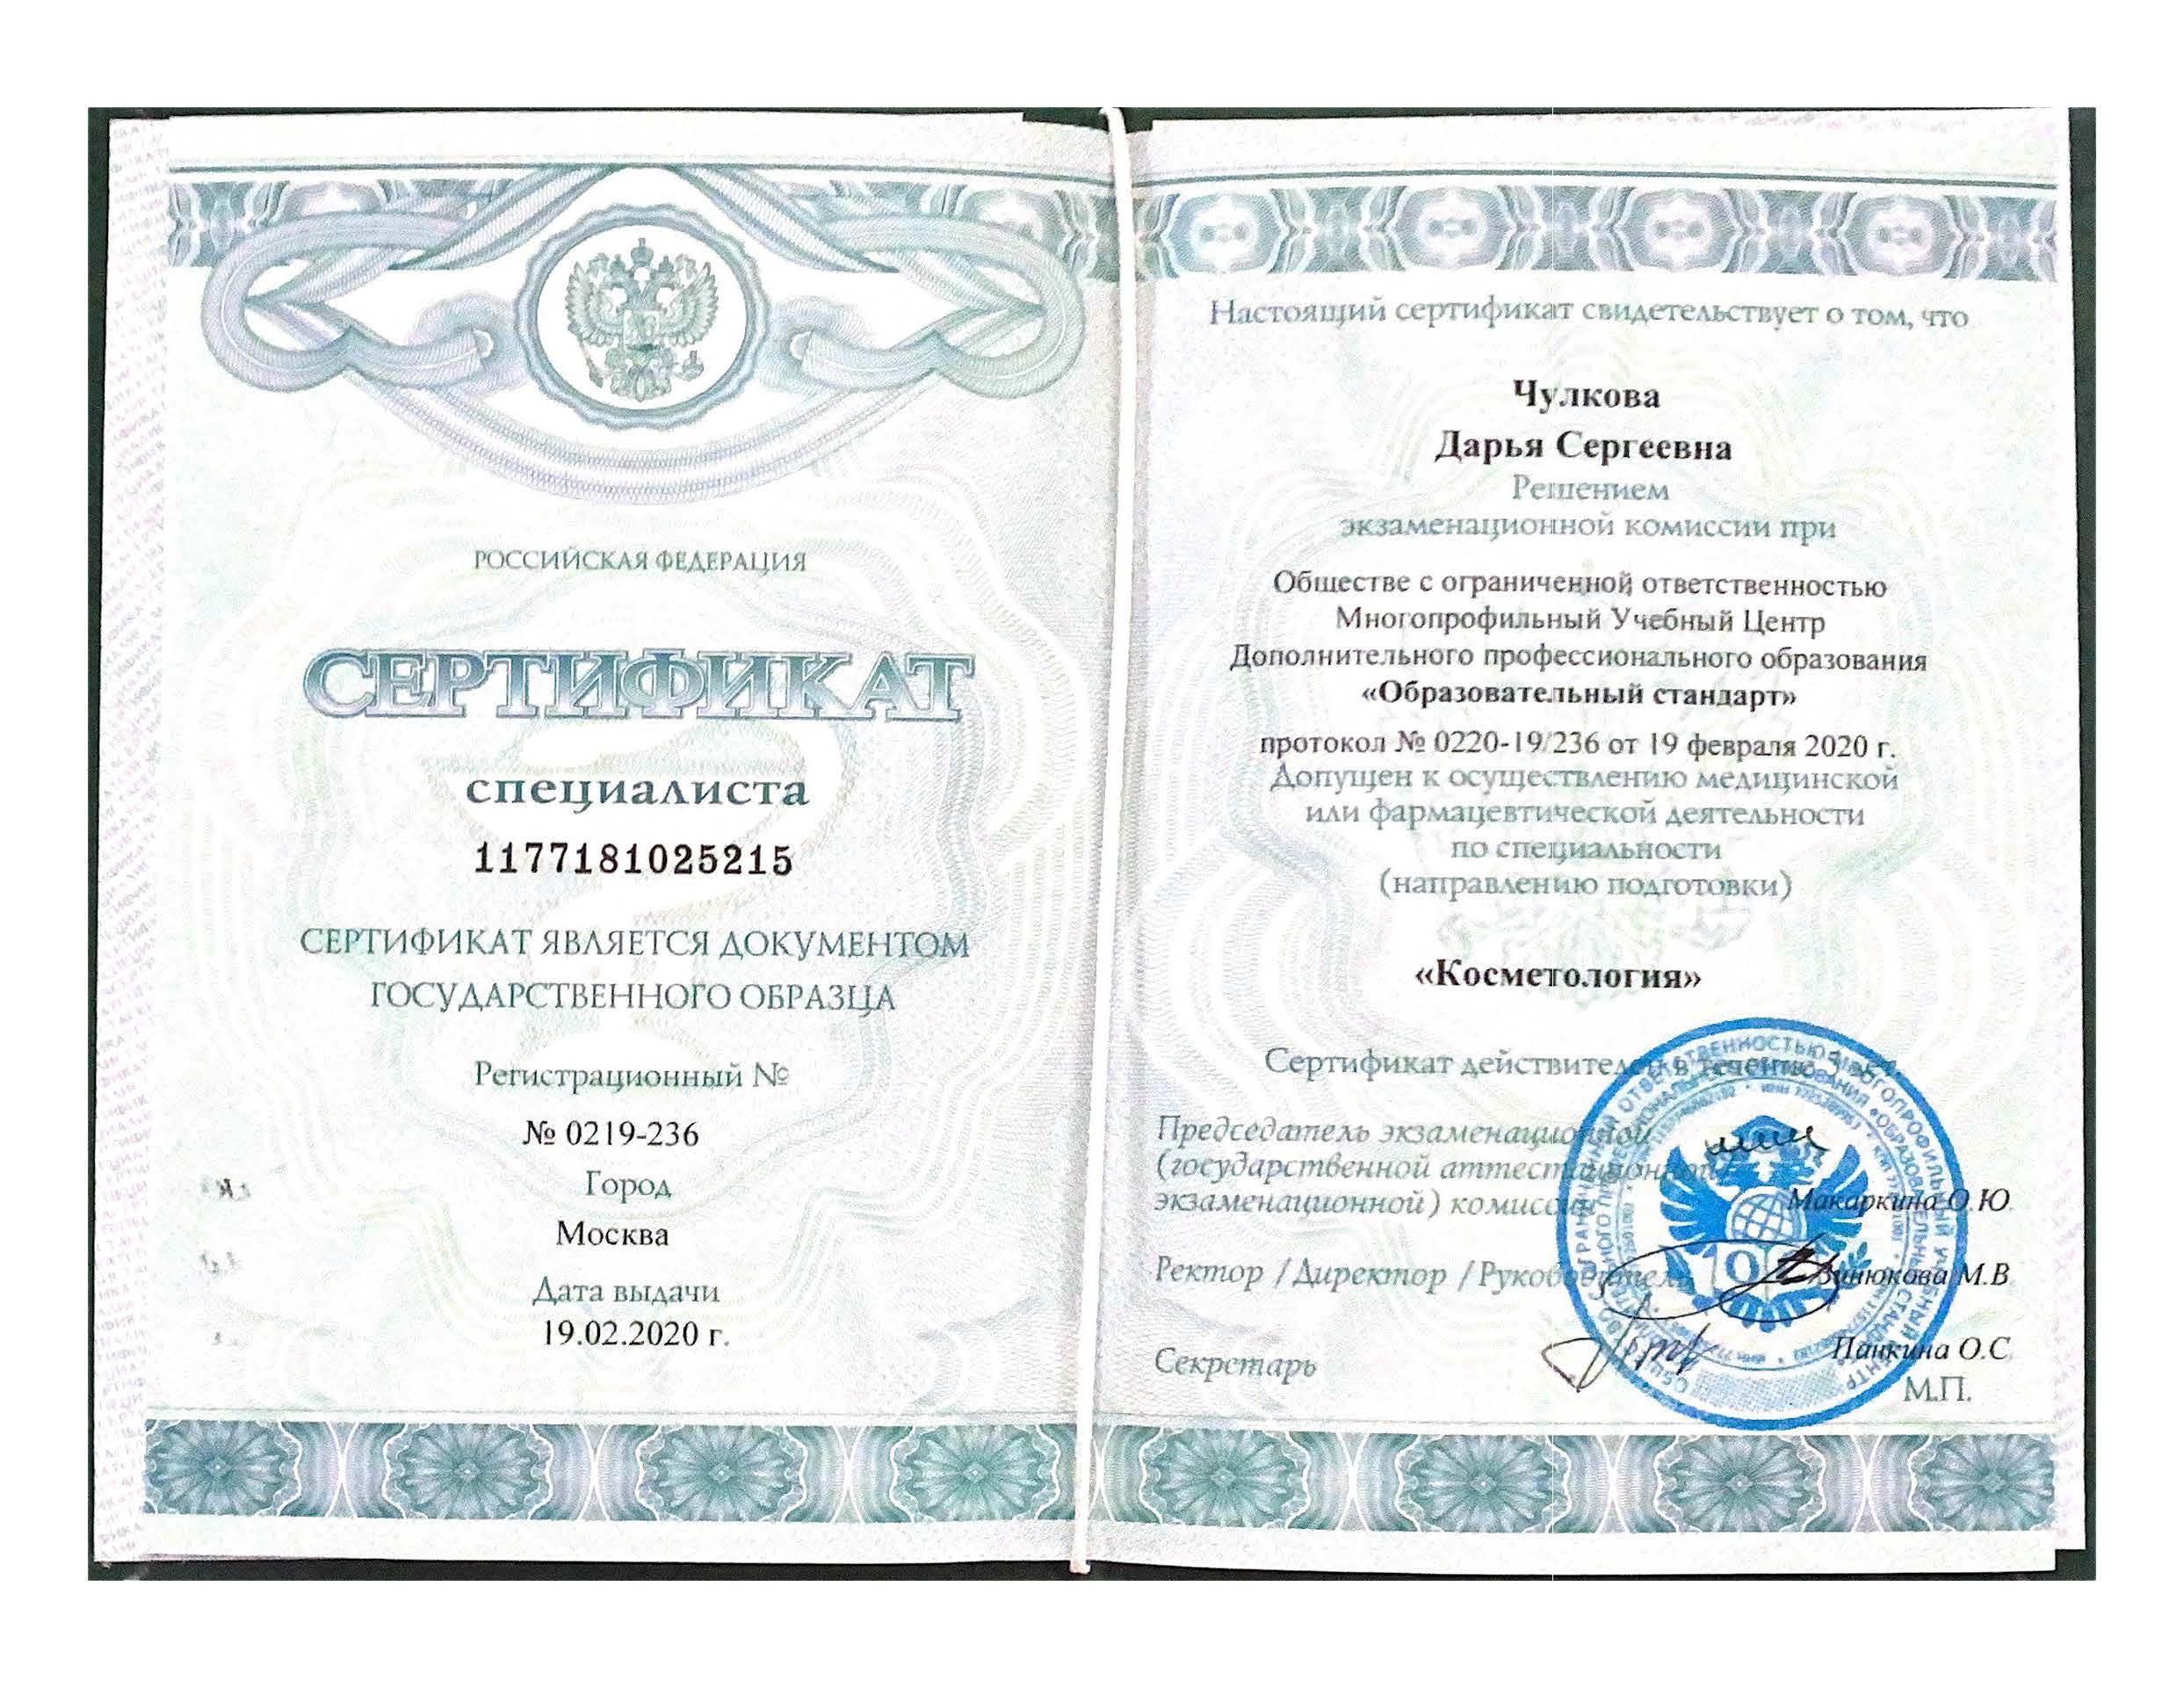 Сертификат специалиста "Косметология". 2020 г.